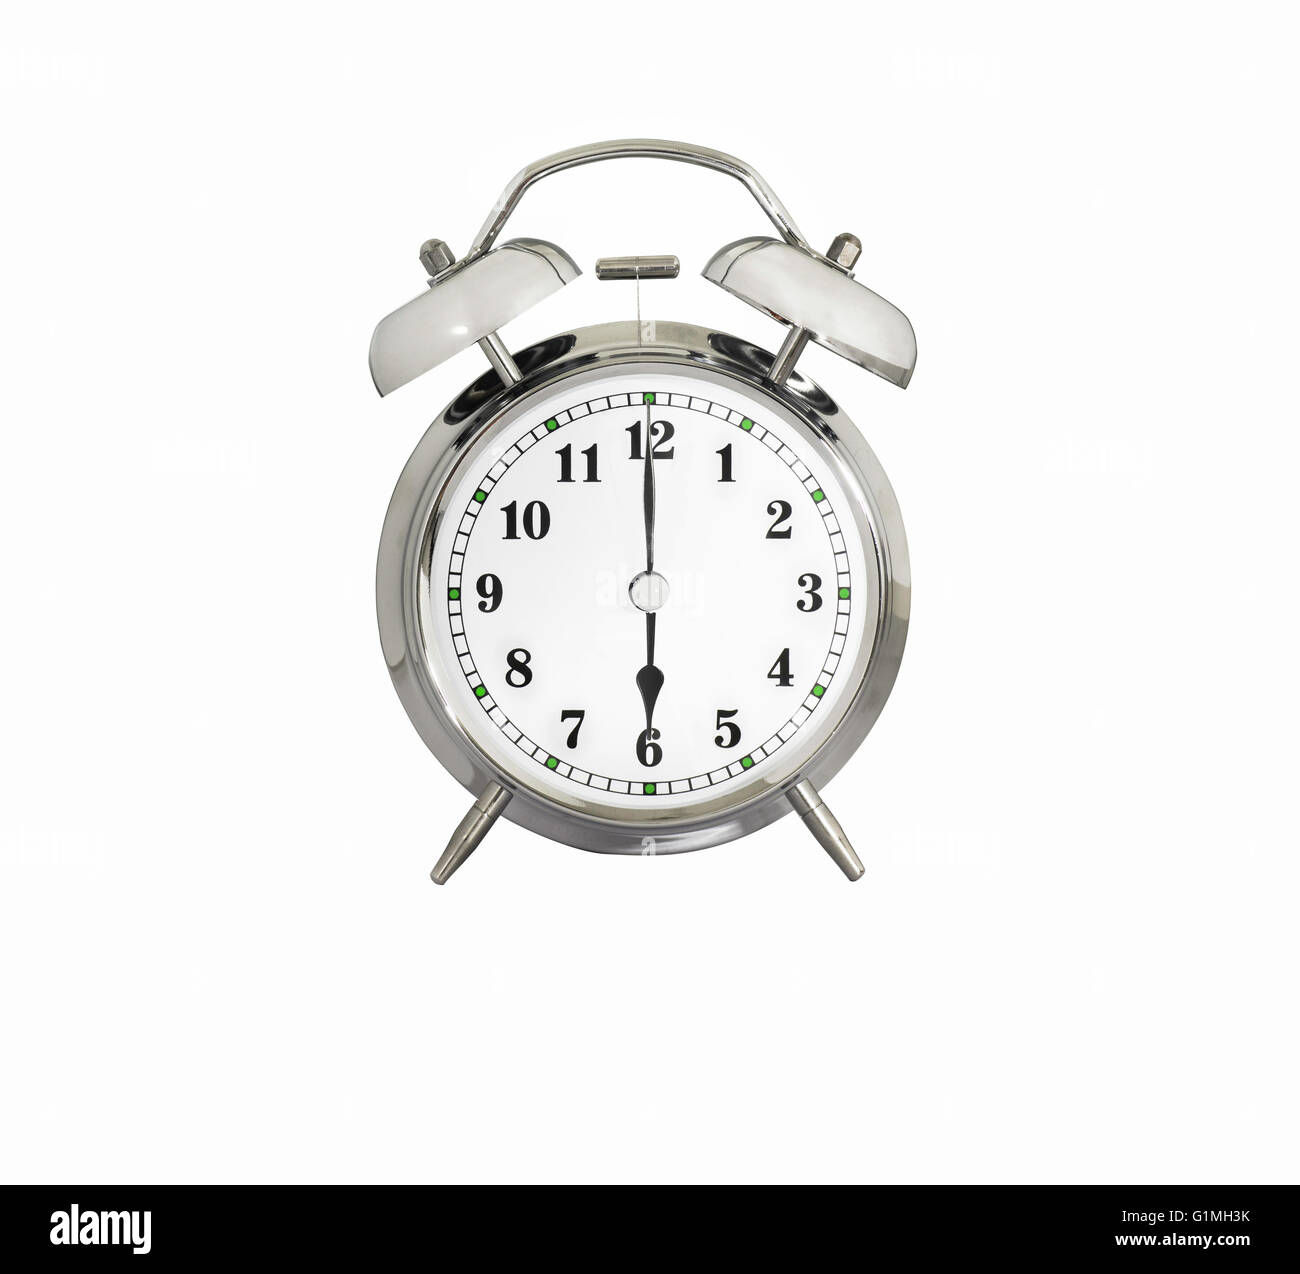 Alarm clock 6 am immagini e fotografie stock ad alta risoluzione - Alamy